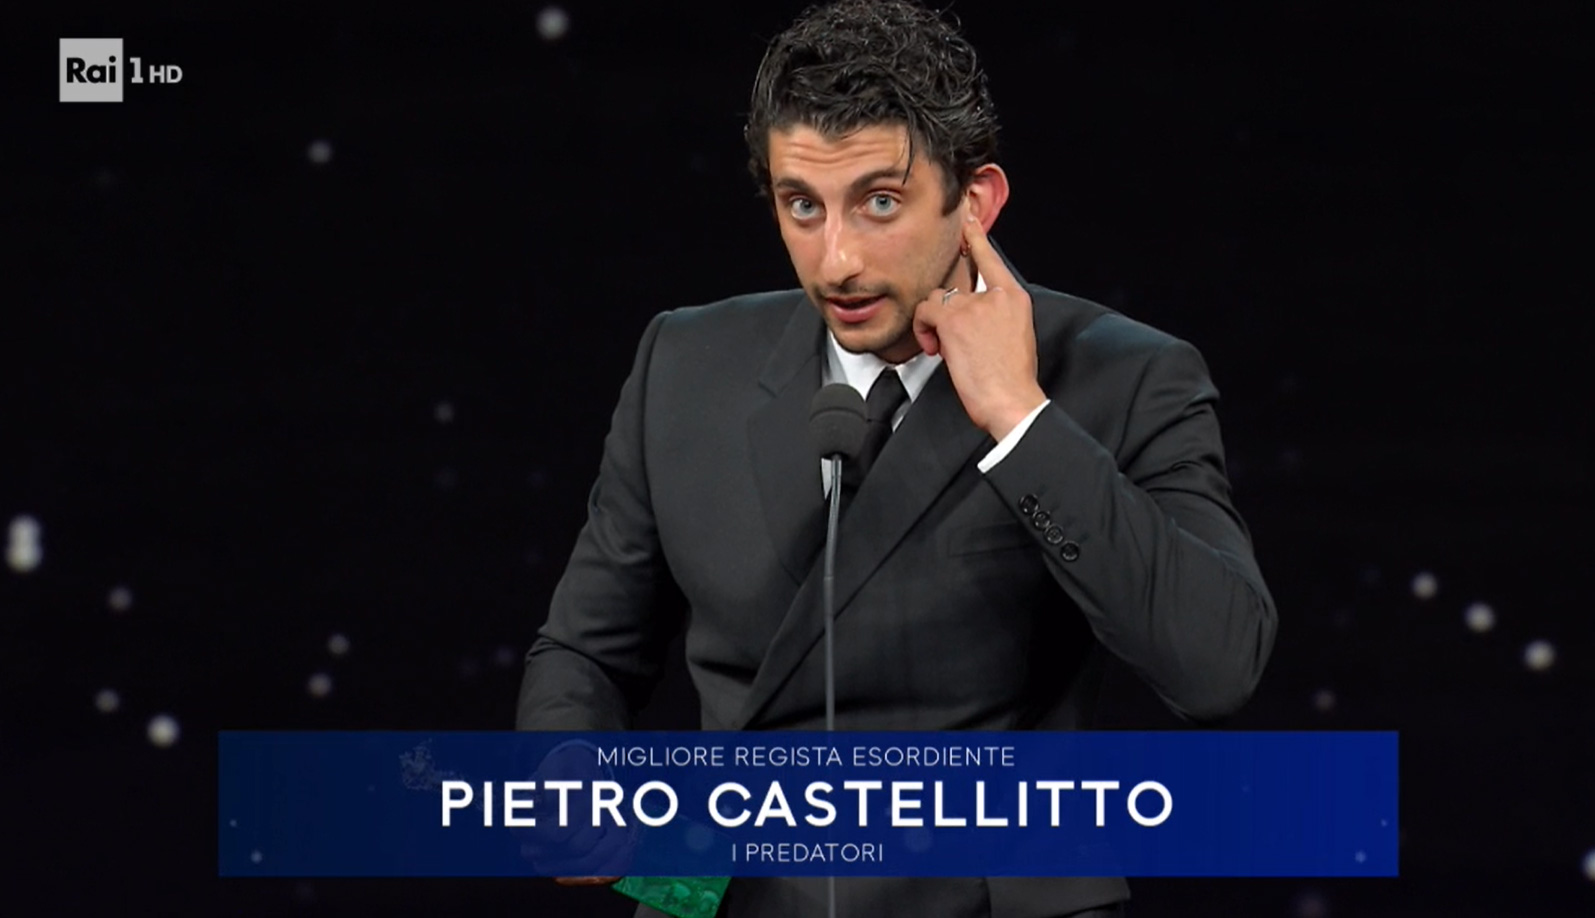 David di Donatello 2021  - Miglior Regista Esordiente a Pietro Castellitto per 'I predatori'